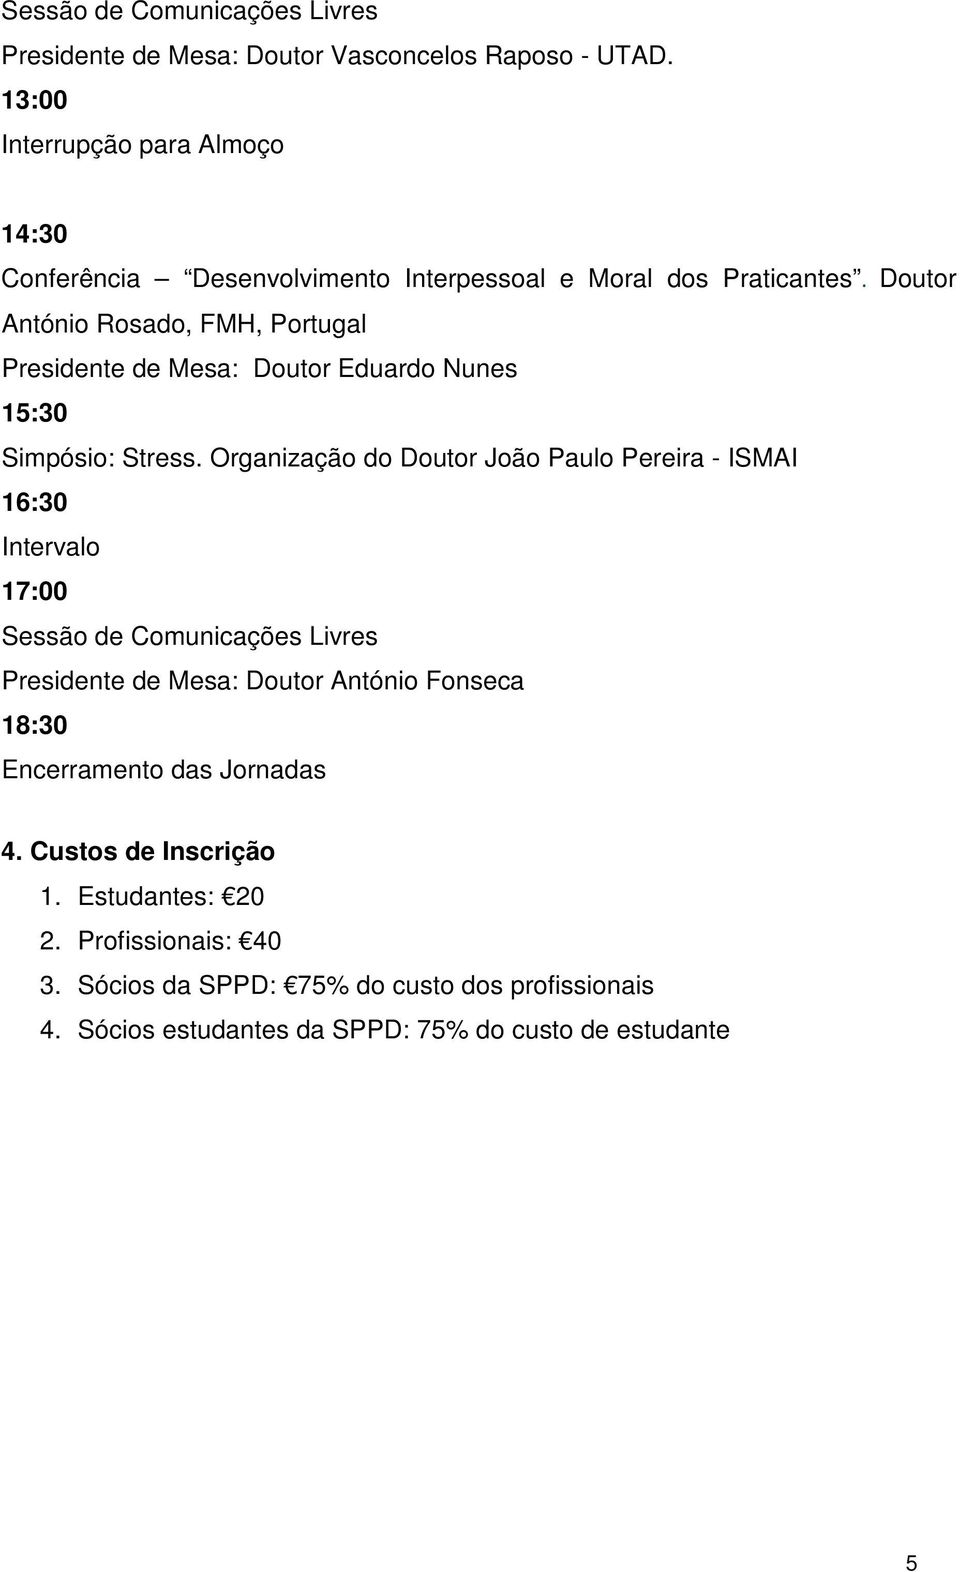 Doutor António Rosado, FMH, Portugal Presidente de Mesa: Doutor Eduardo Nunes 15:30 Simpósio: Stress.